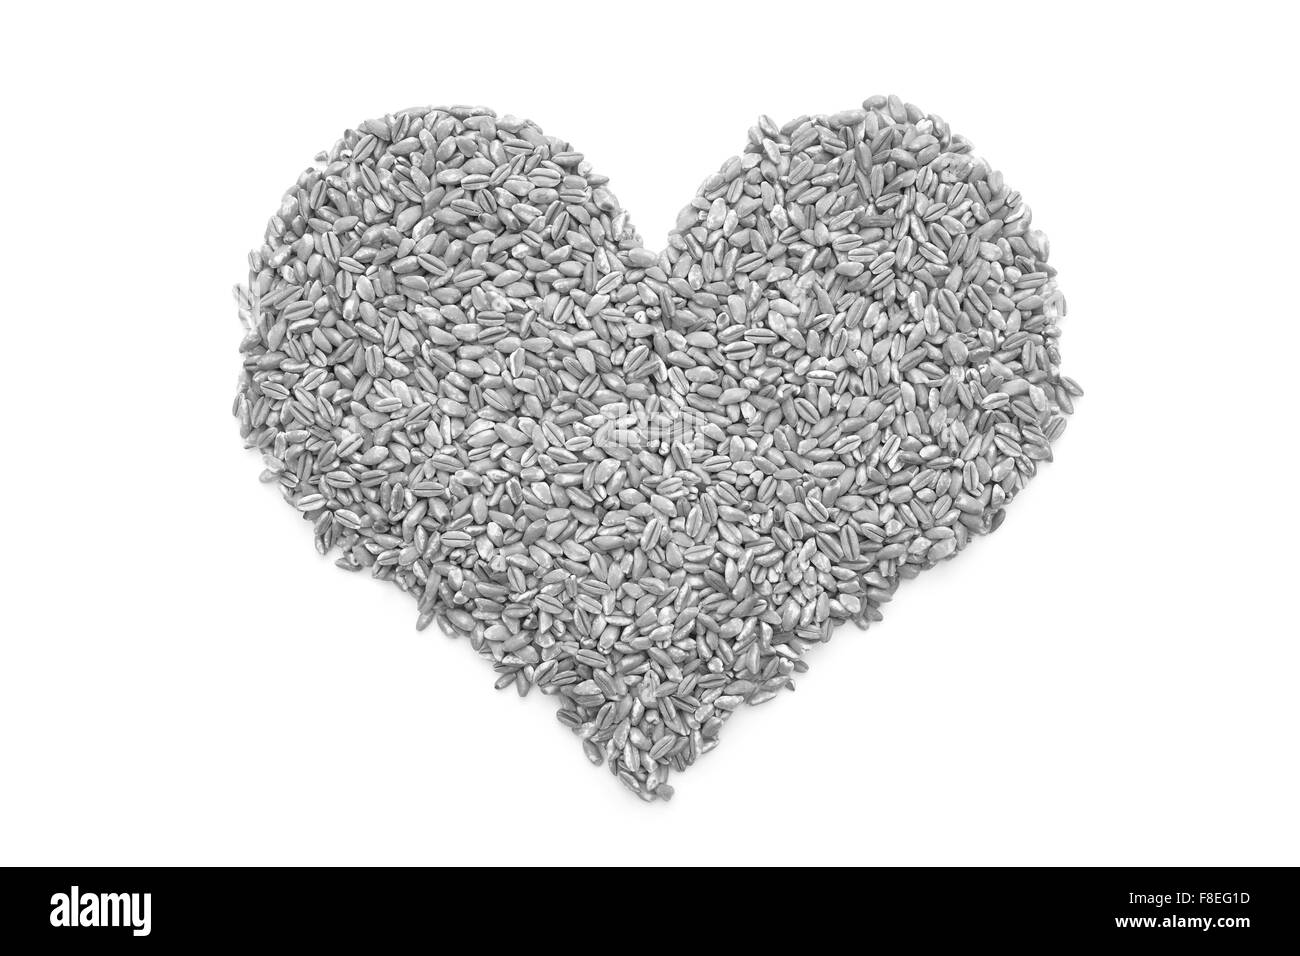 Il Farro dicocco in una forma di cuore, isolata su uno sfondo bianco - elaborazione monocromatica Foto Stock